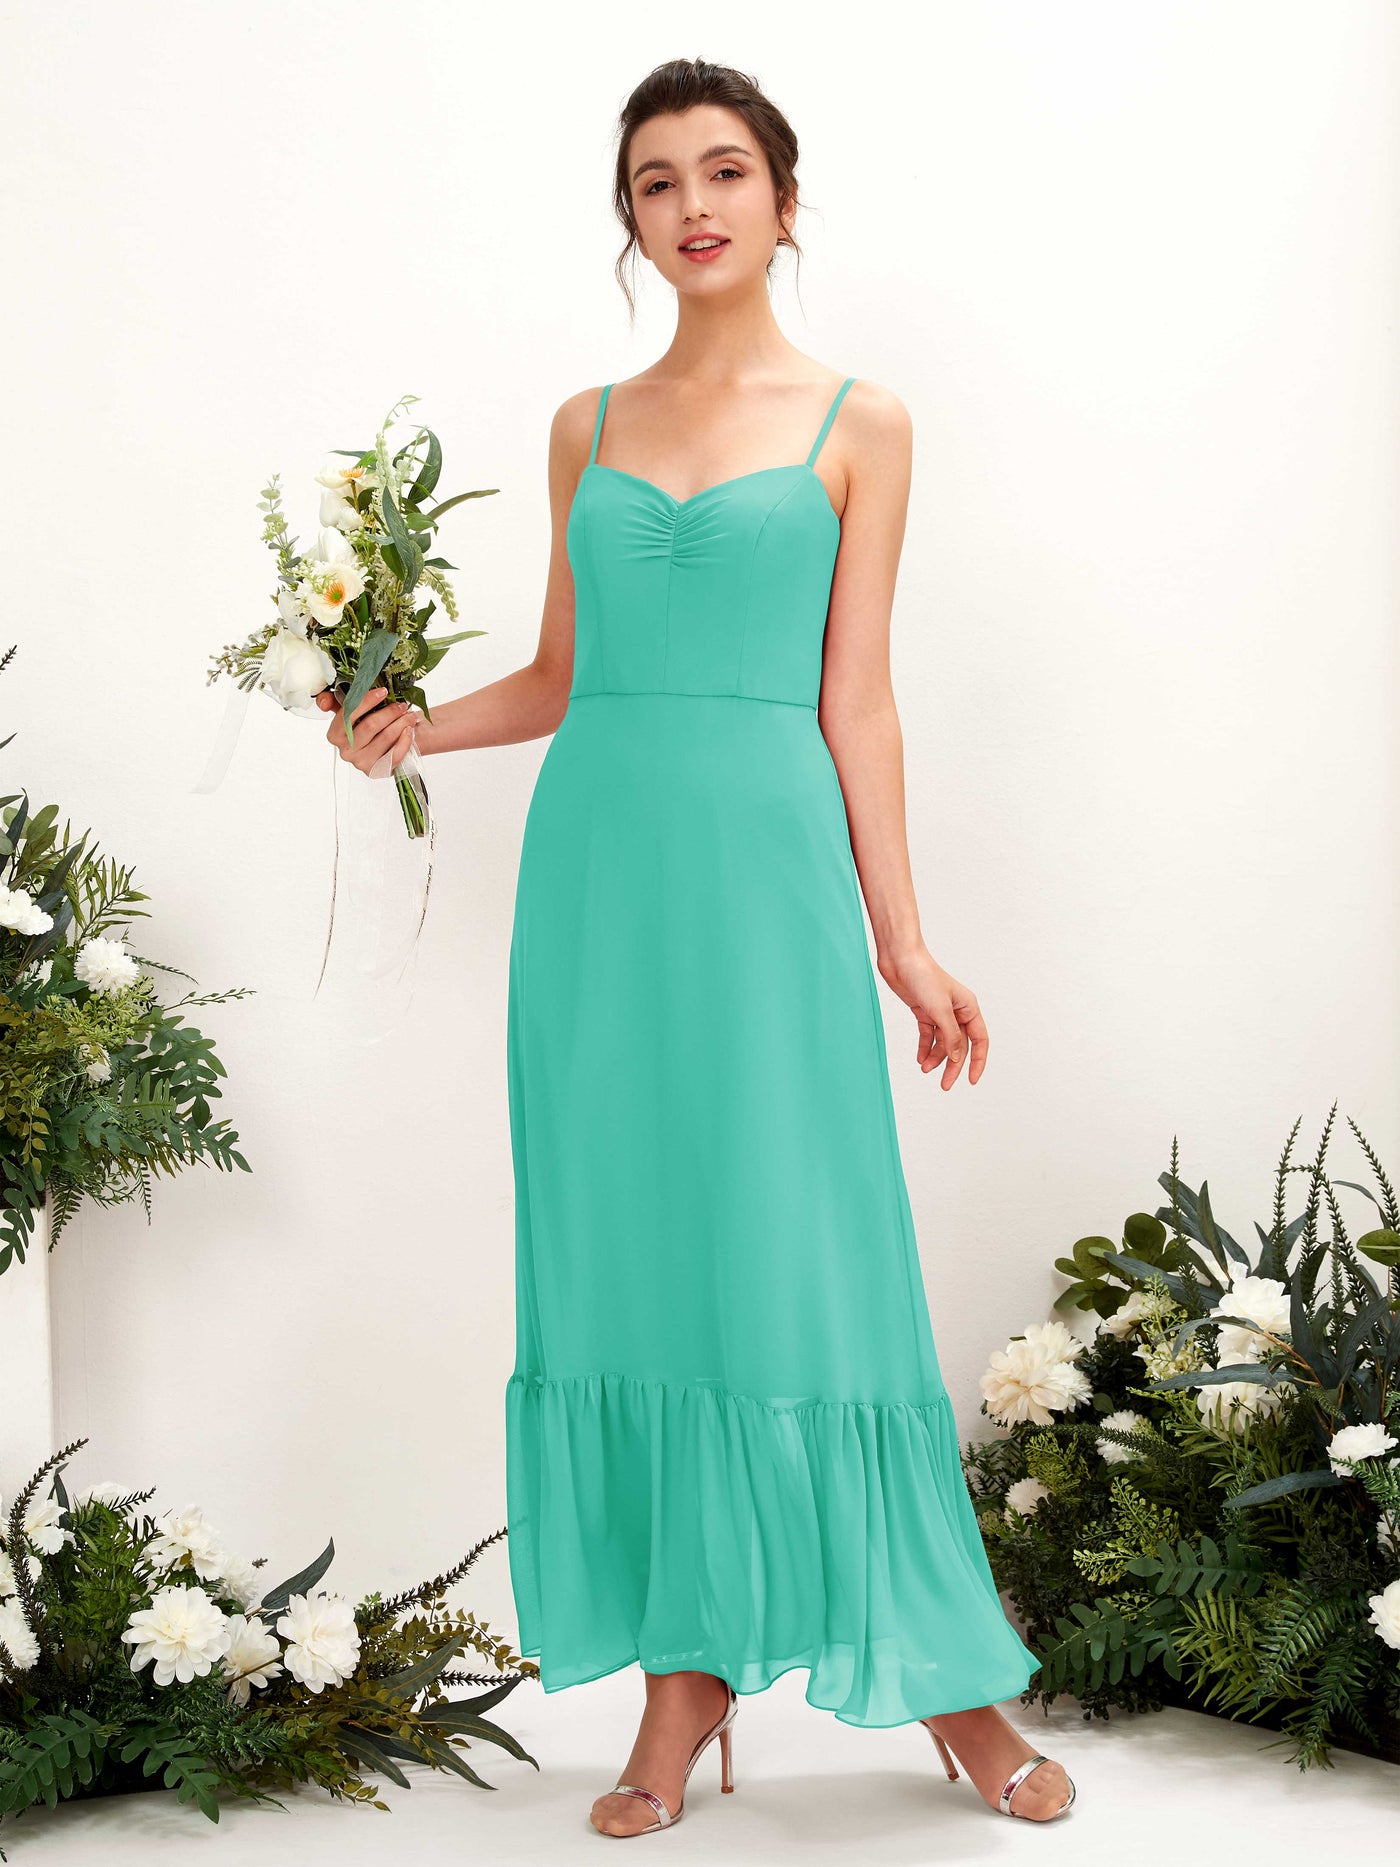 Spaghetti-straps Sweetheart Sleeveless Chiffon Bridesmaid Dress - Tiffany (81223032)#color_tiffany